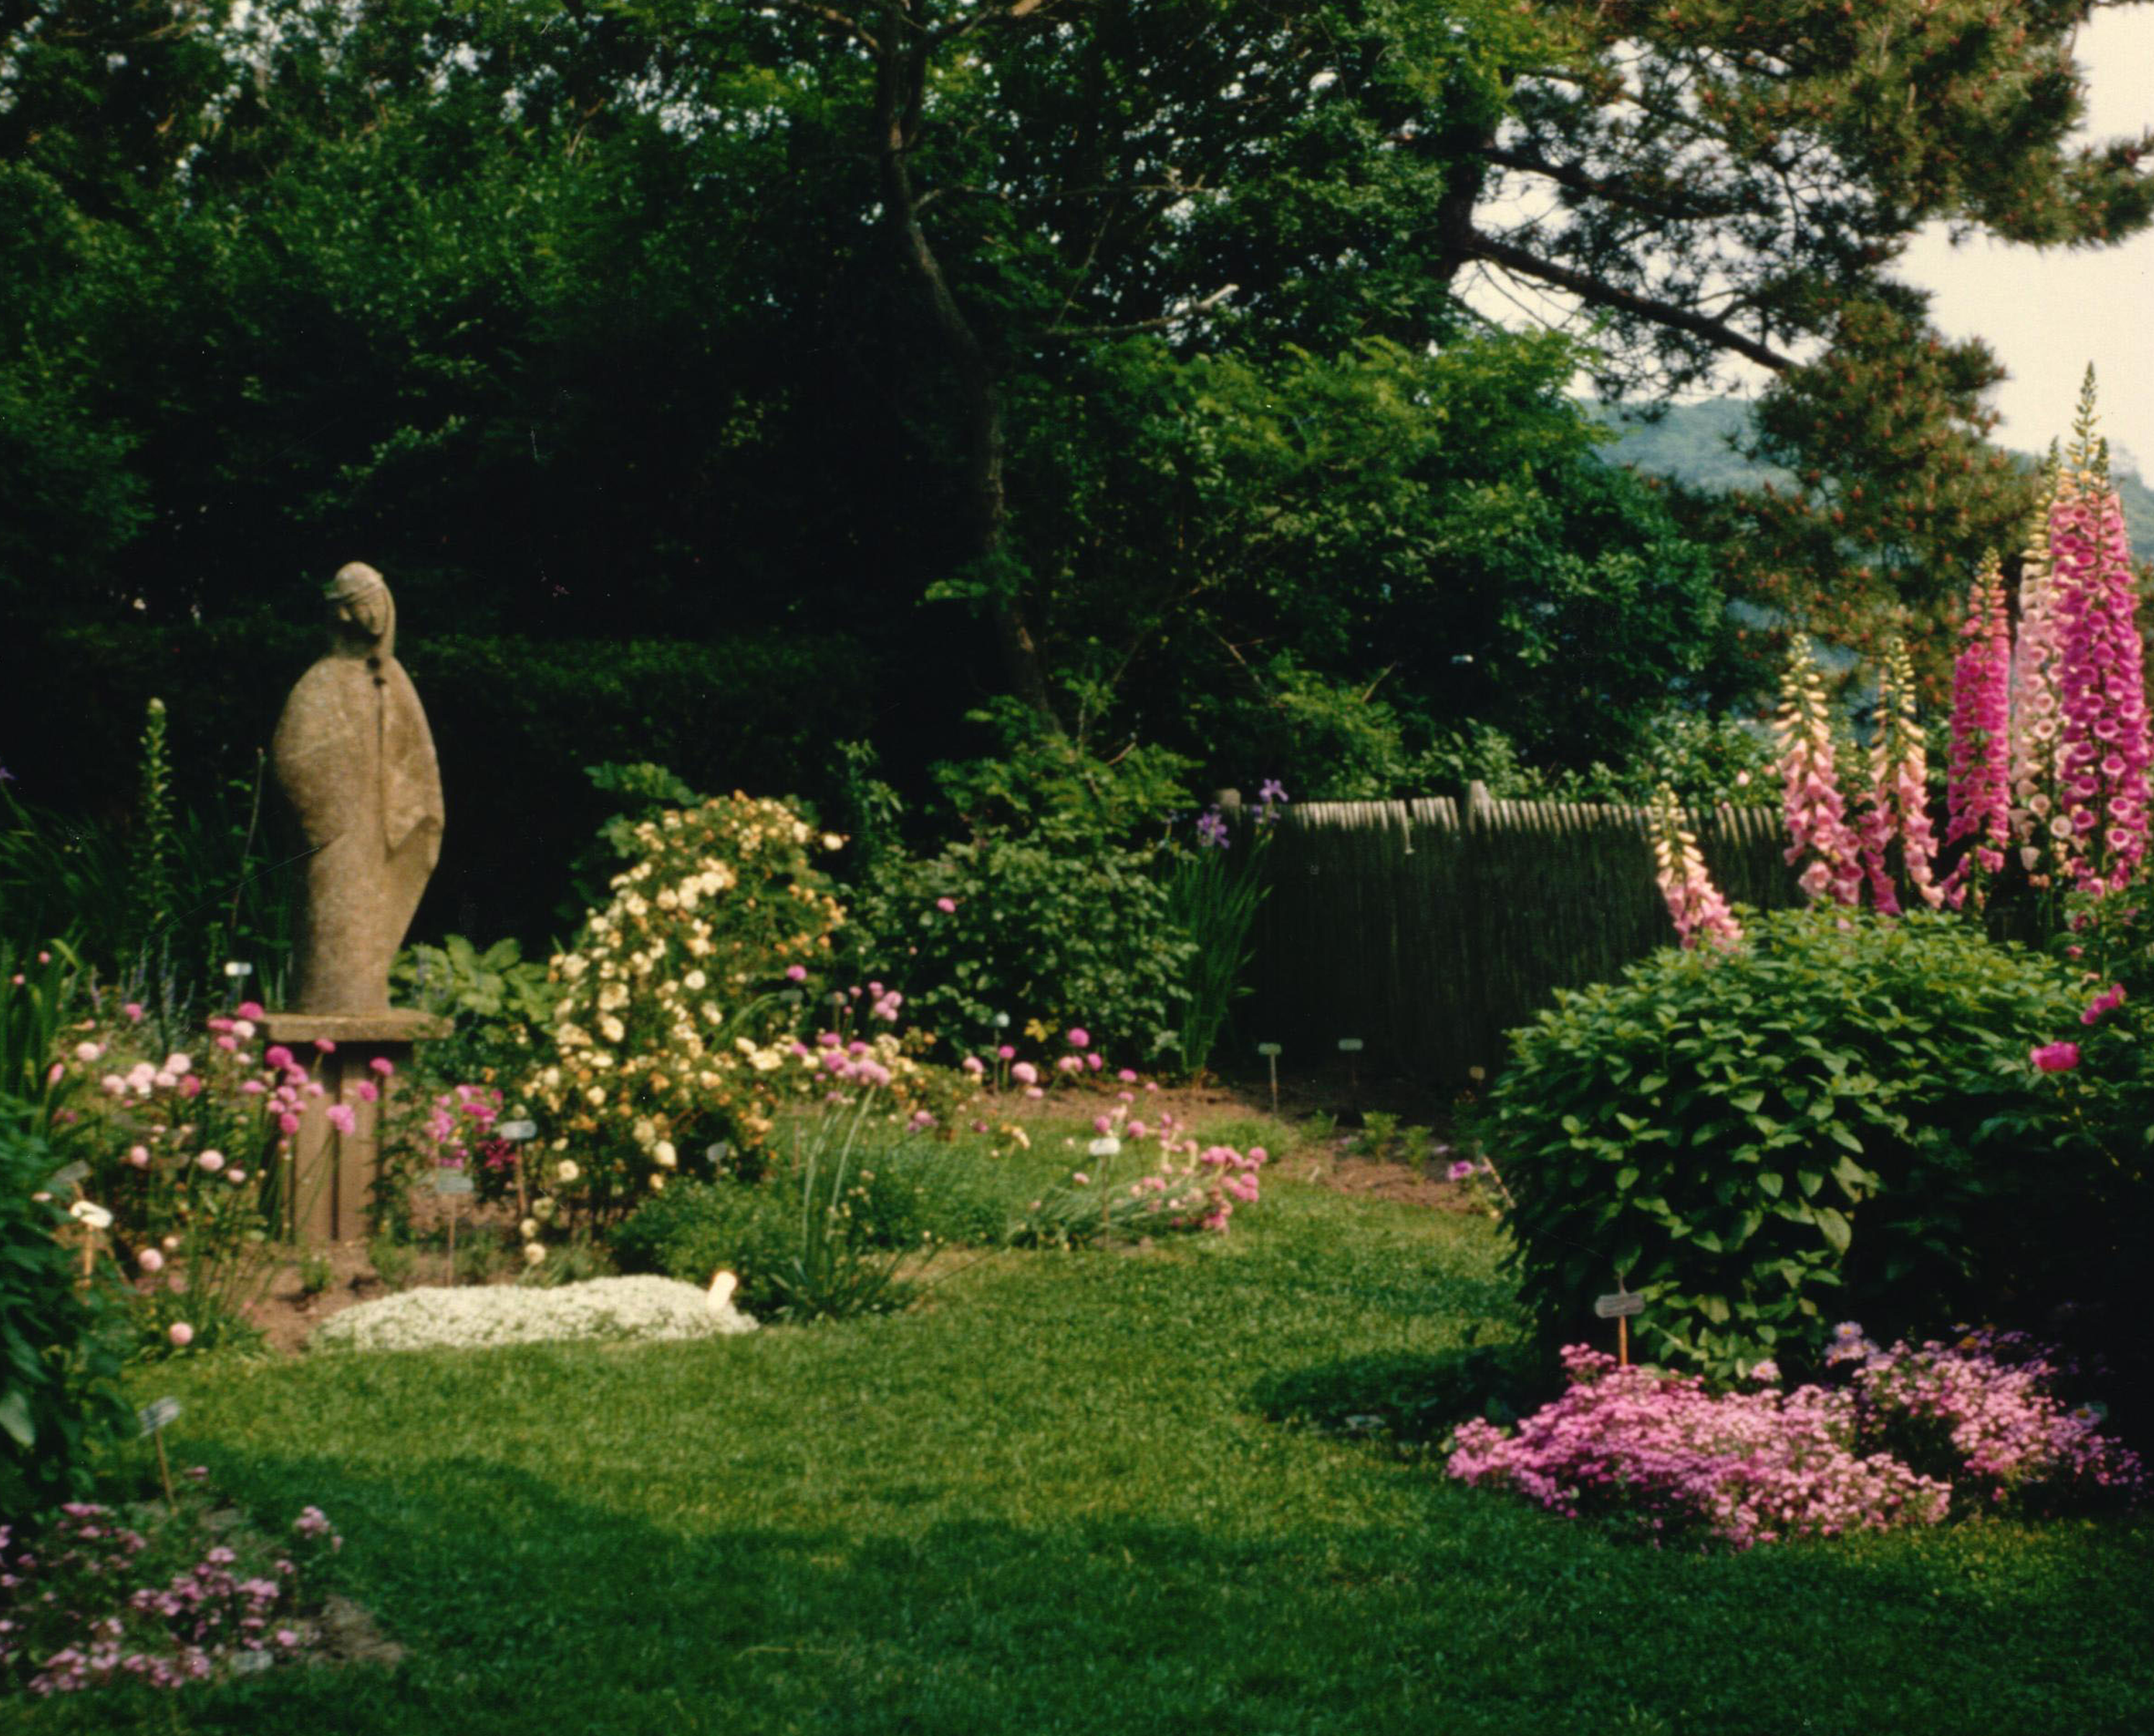 Virgin Mary statue, circa 1982 